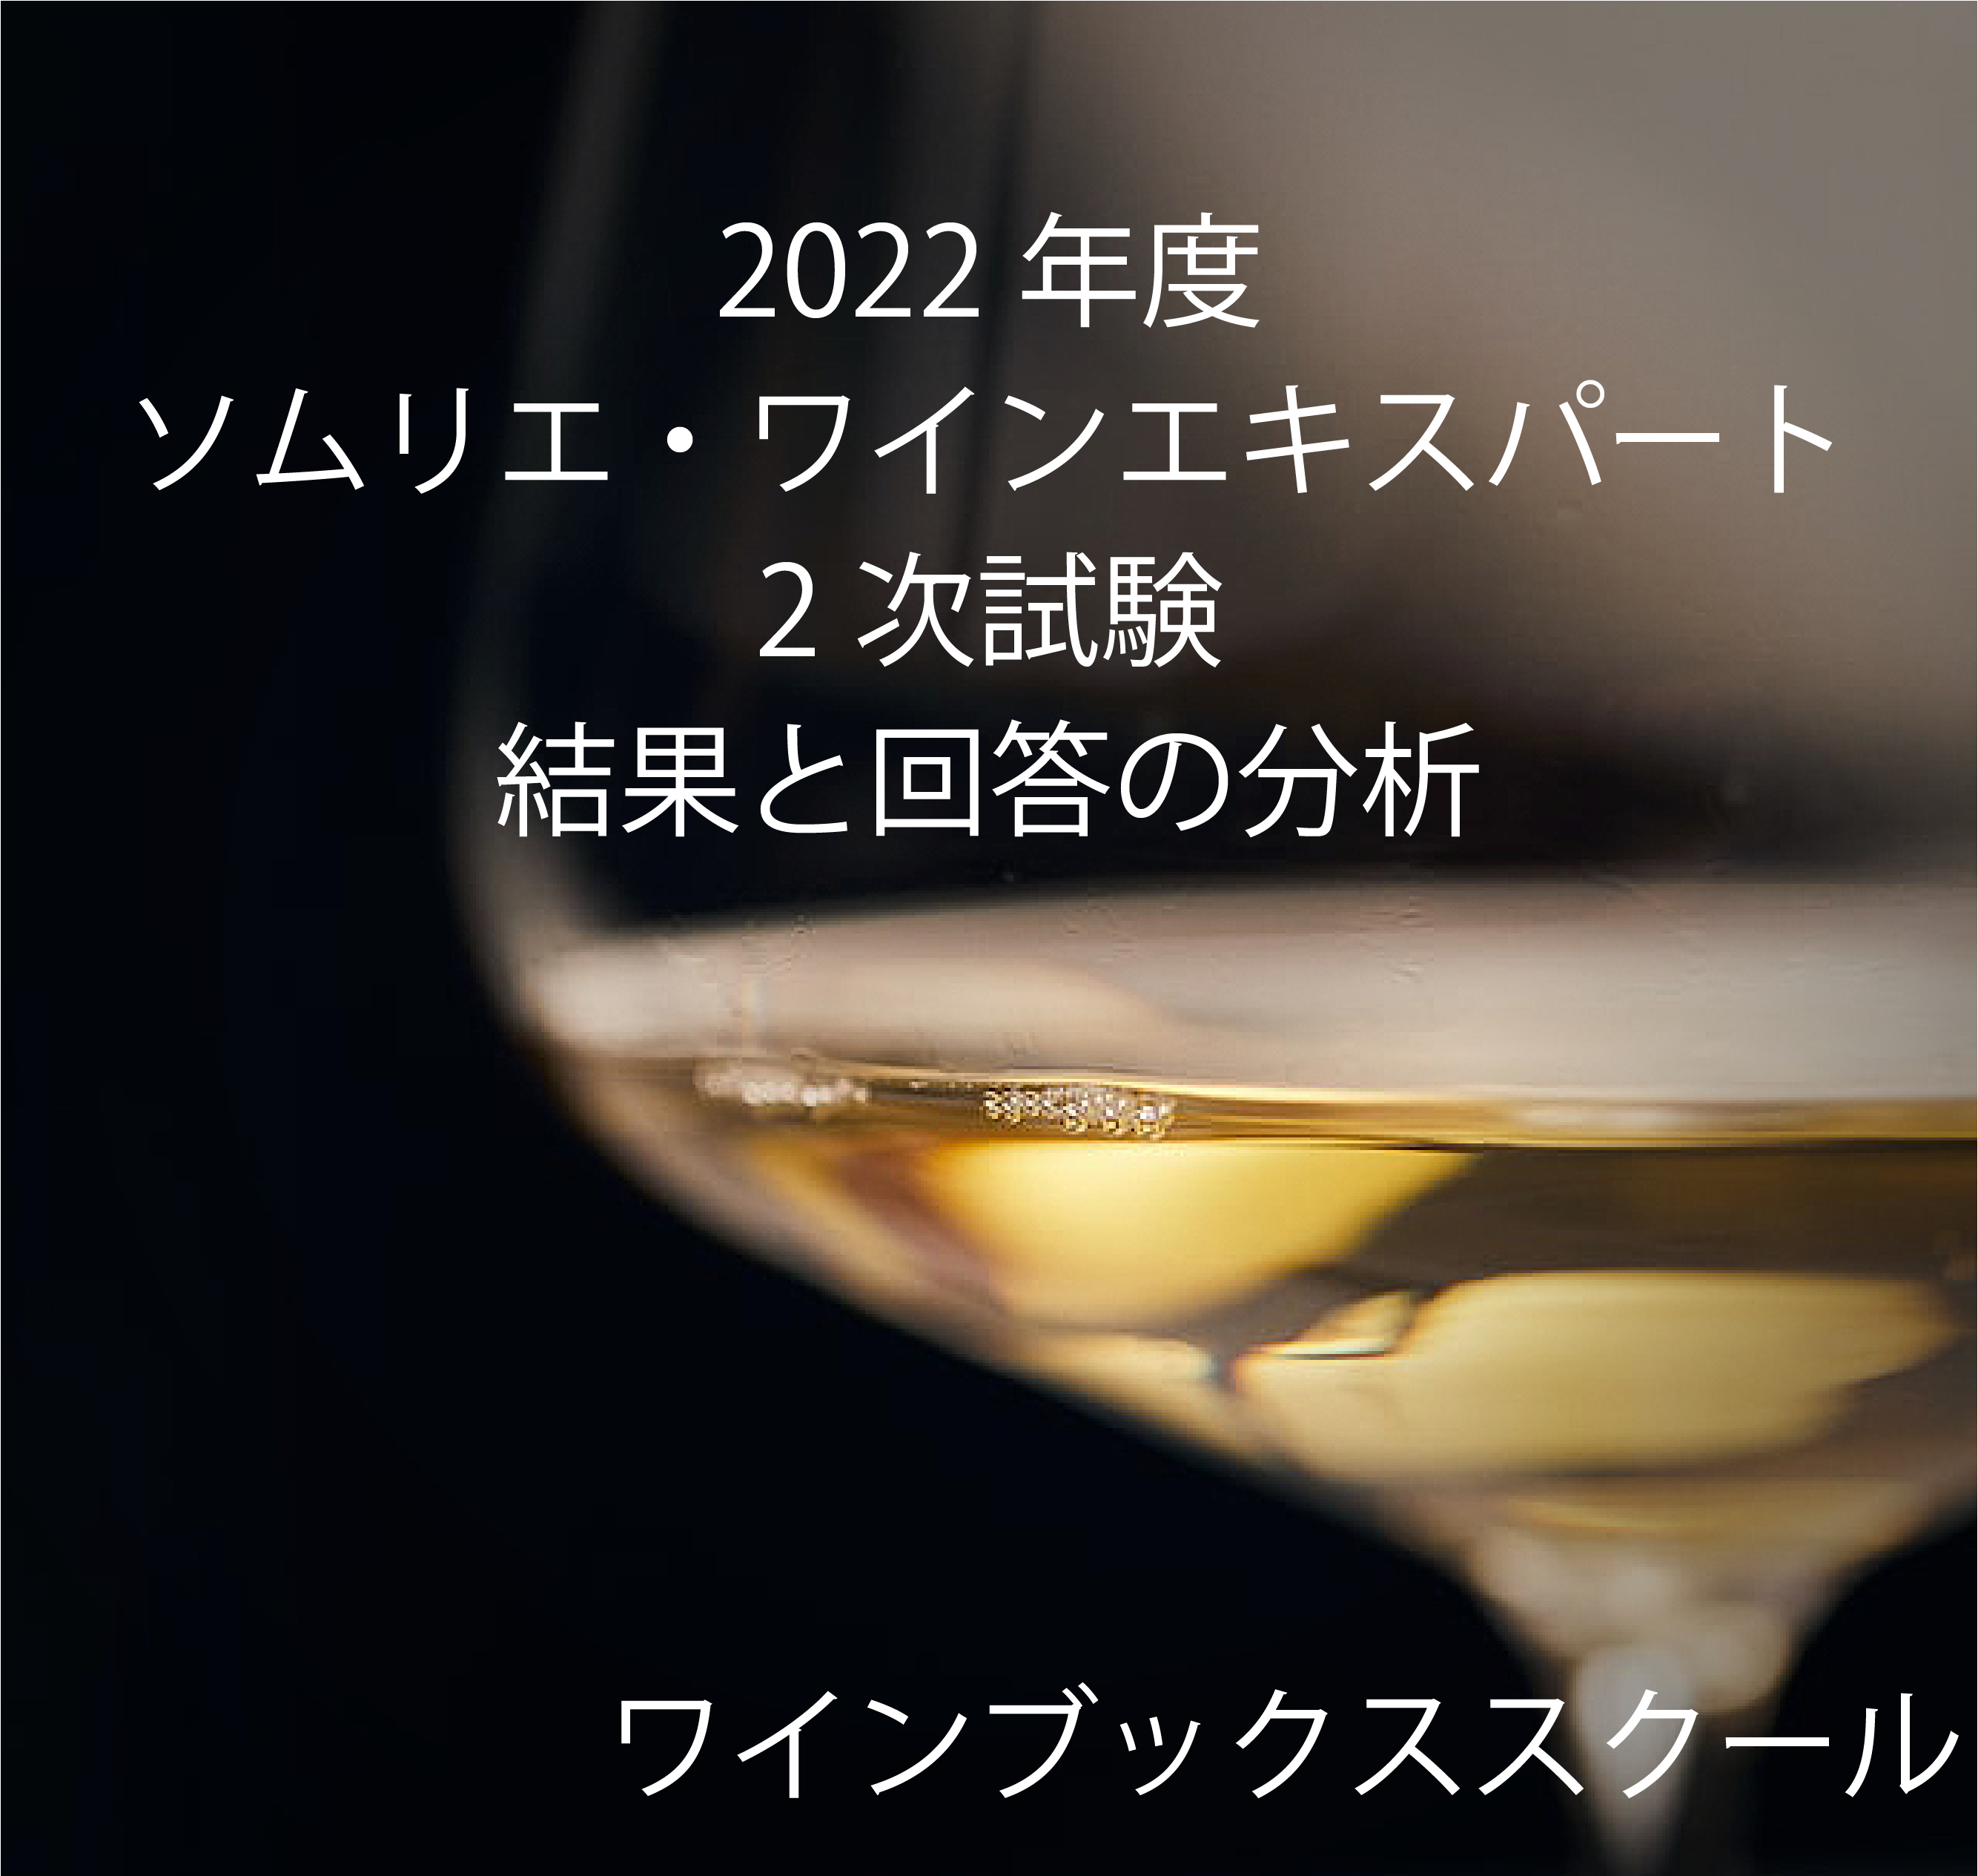 2022年度ソムリエ・ワインエキスパート二次試験テイスティングワインの 